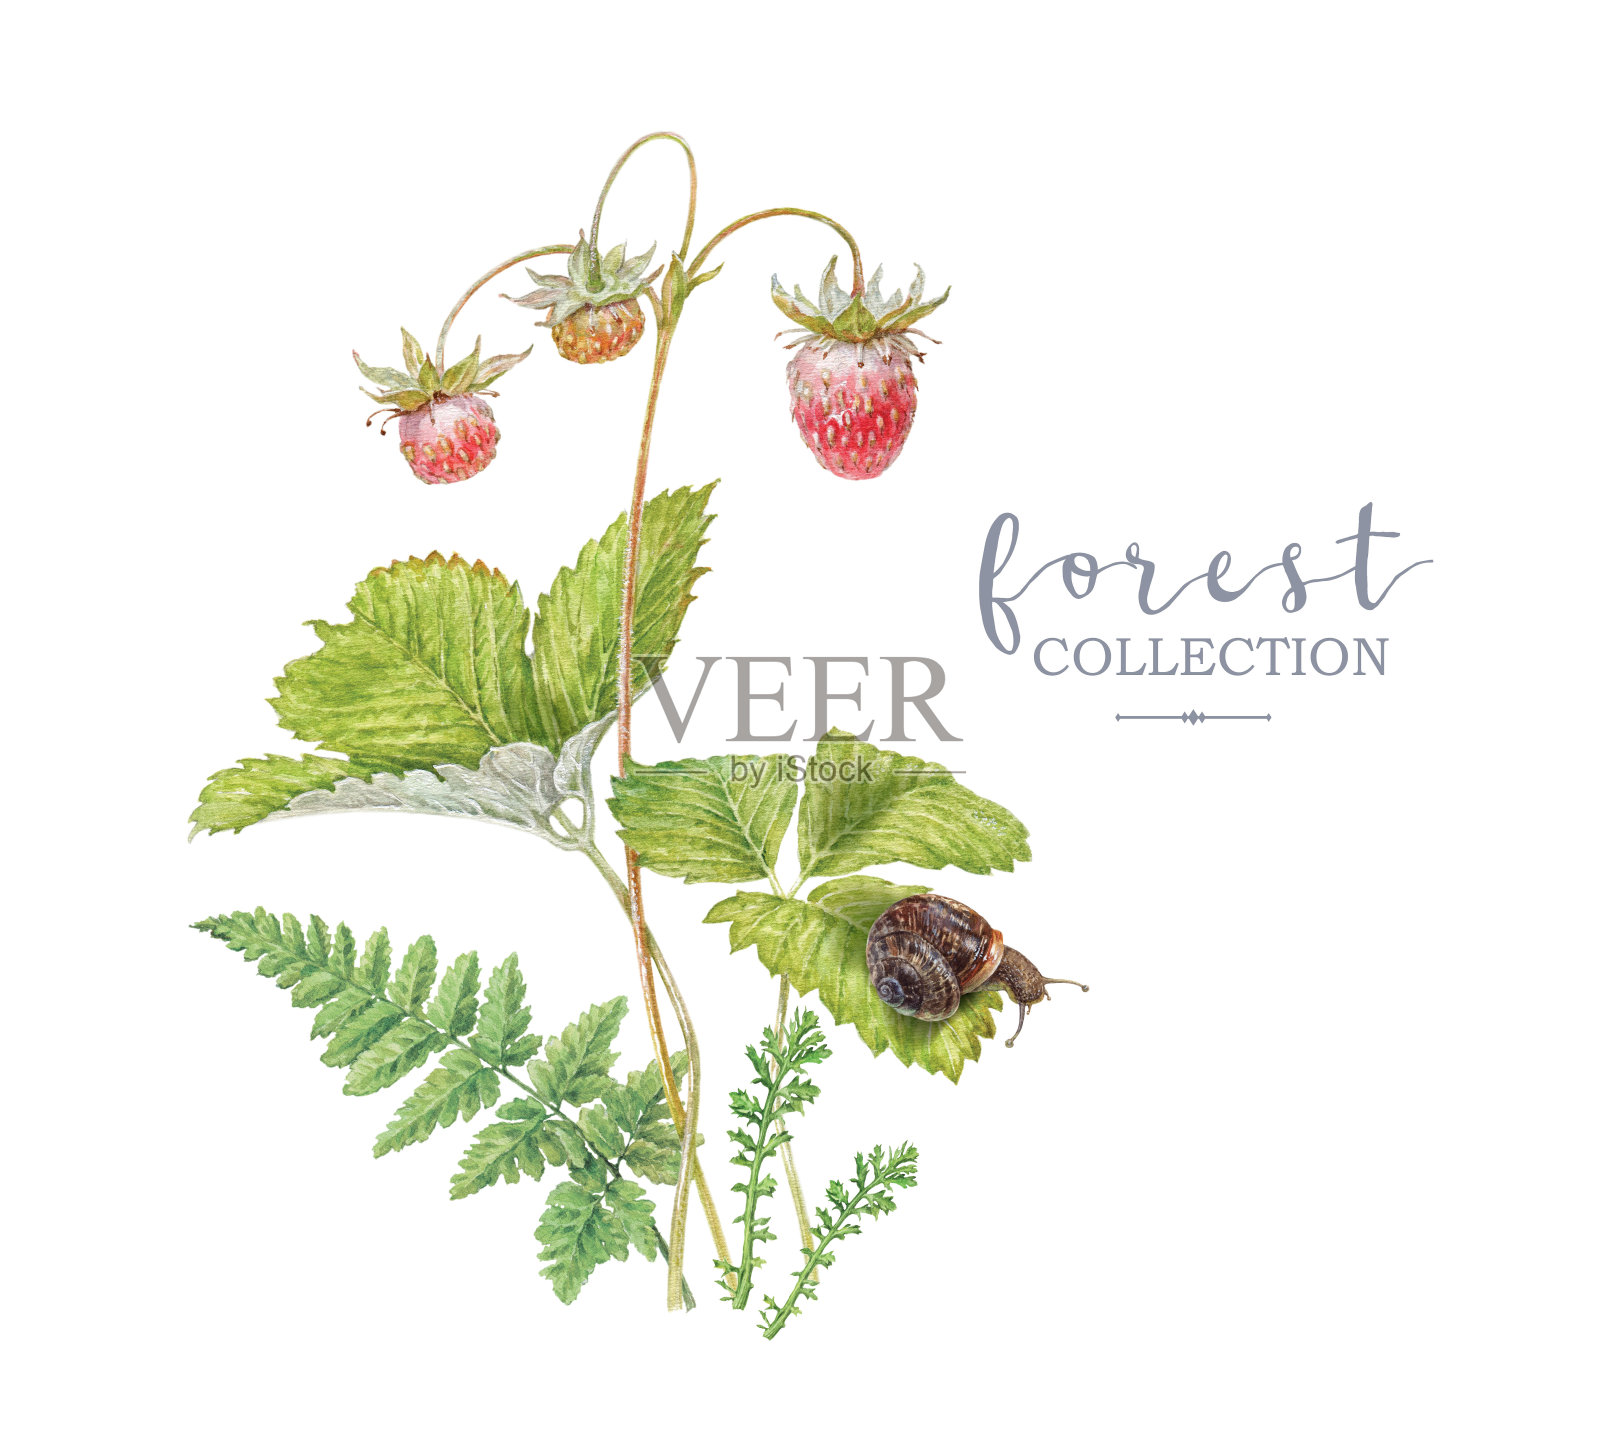 印有森林草莓和蜗牛的水彩画横幅插画图片素材